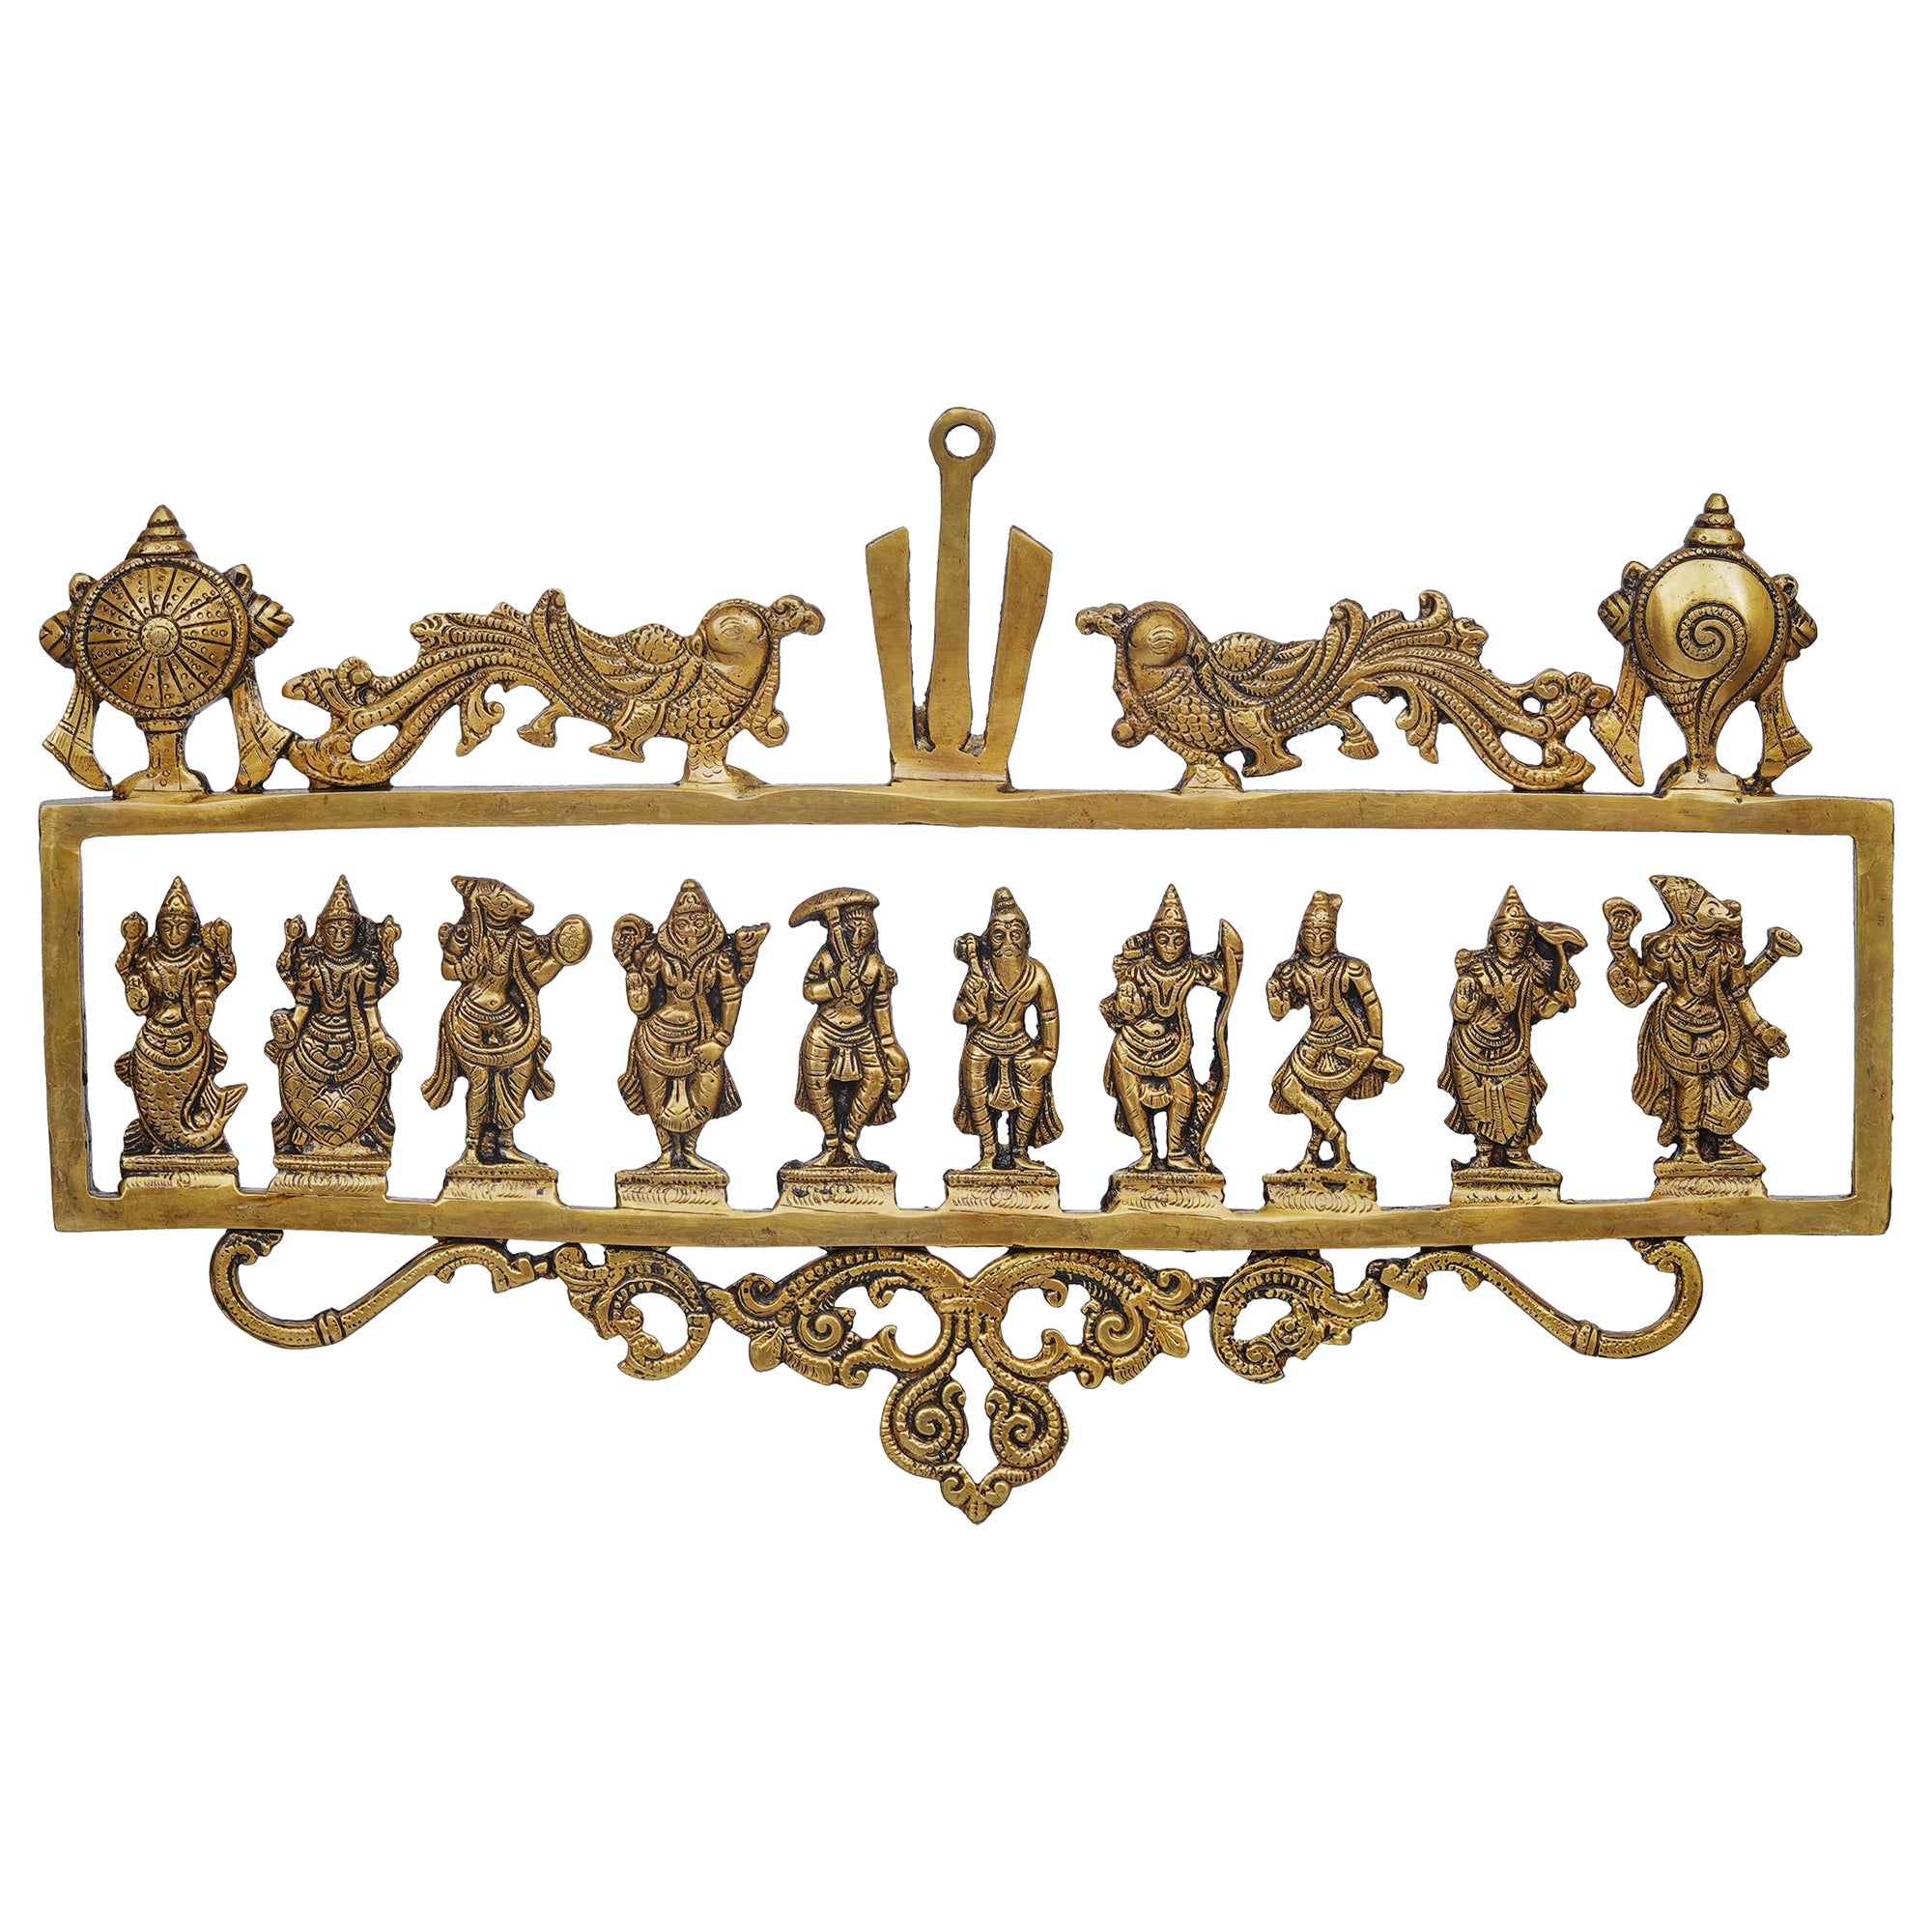 eCraftIndia Golden Brass Vishnu Dashavatara - Ten Incarnations of Lord Vishnu Religious Wall Hanging 2